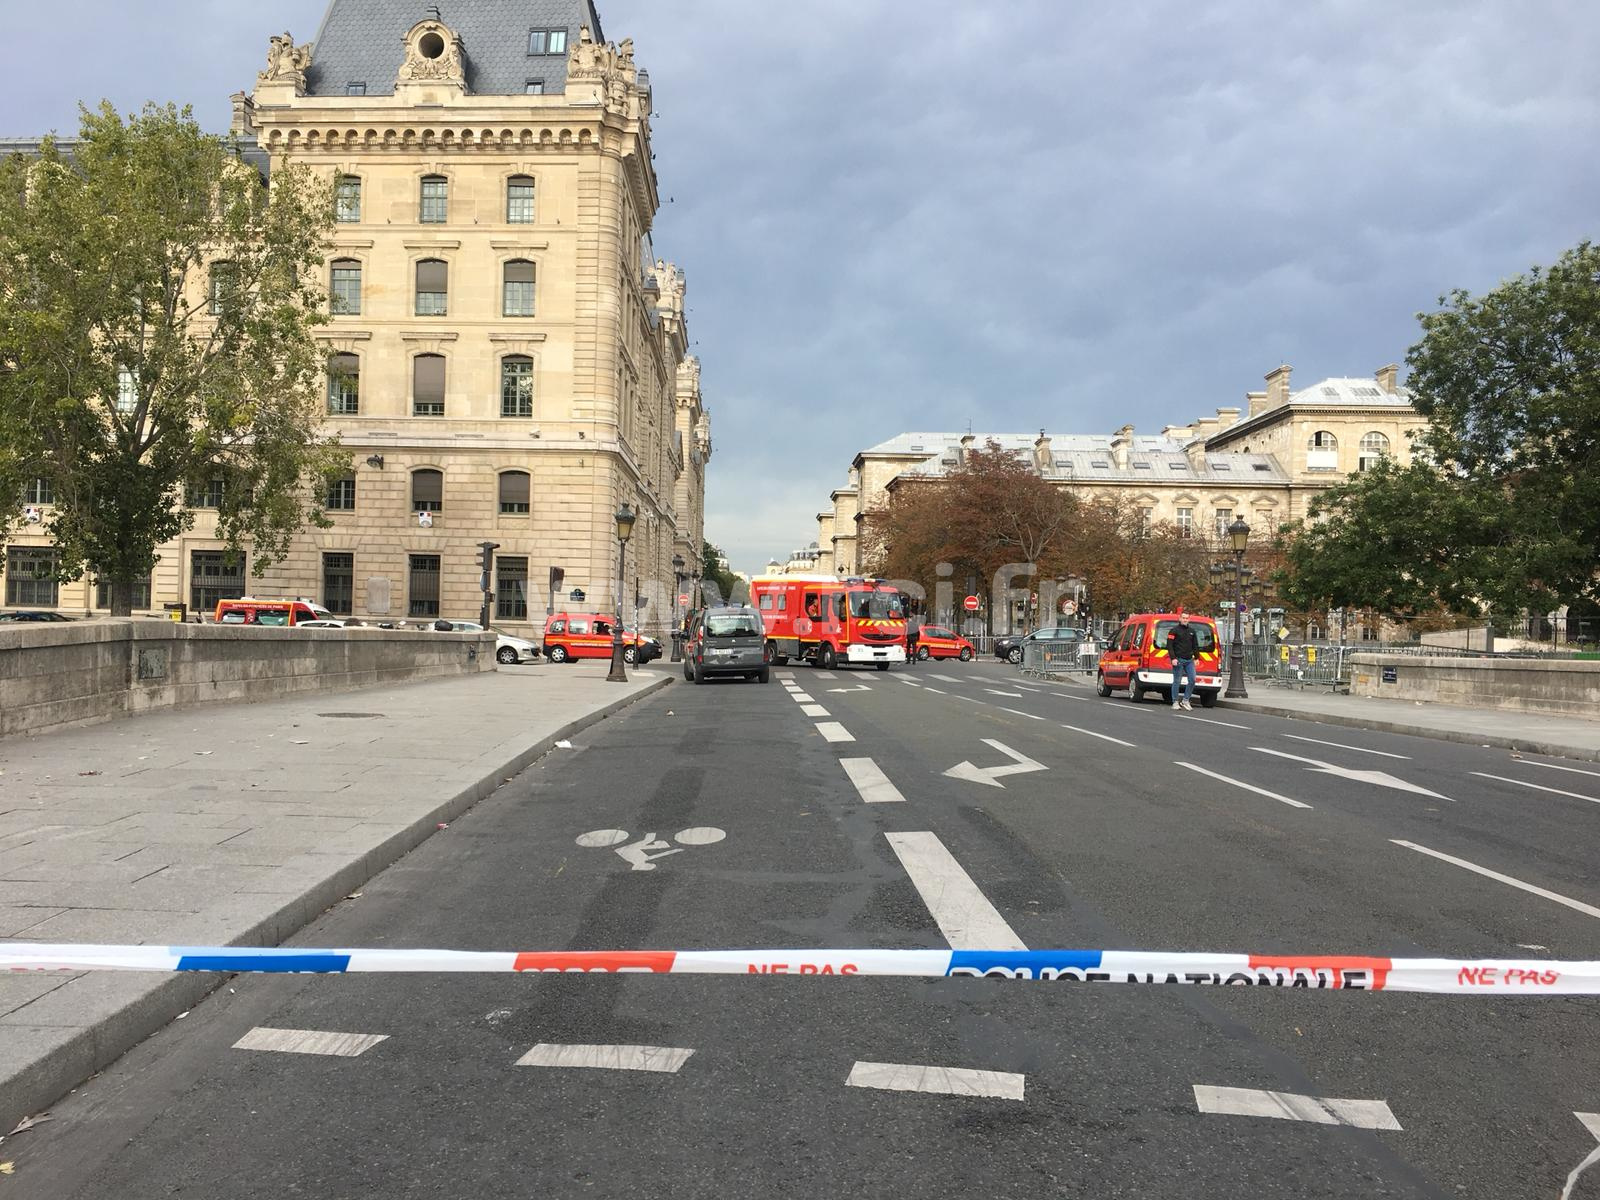     Piste de la radicalisation privilégiée pour la tuerie de la préfecture de Paris 

